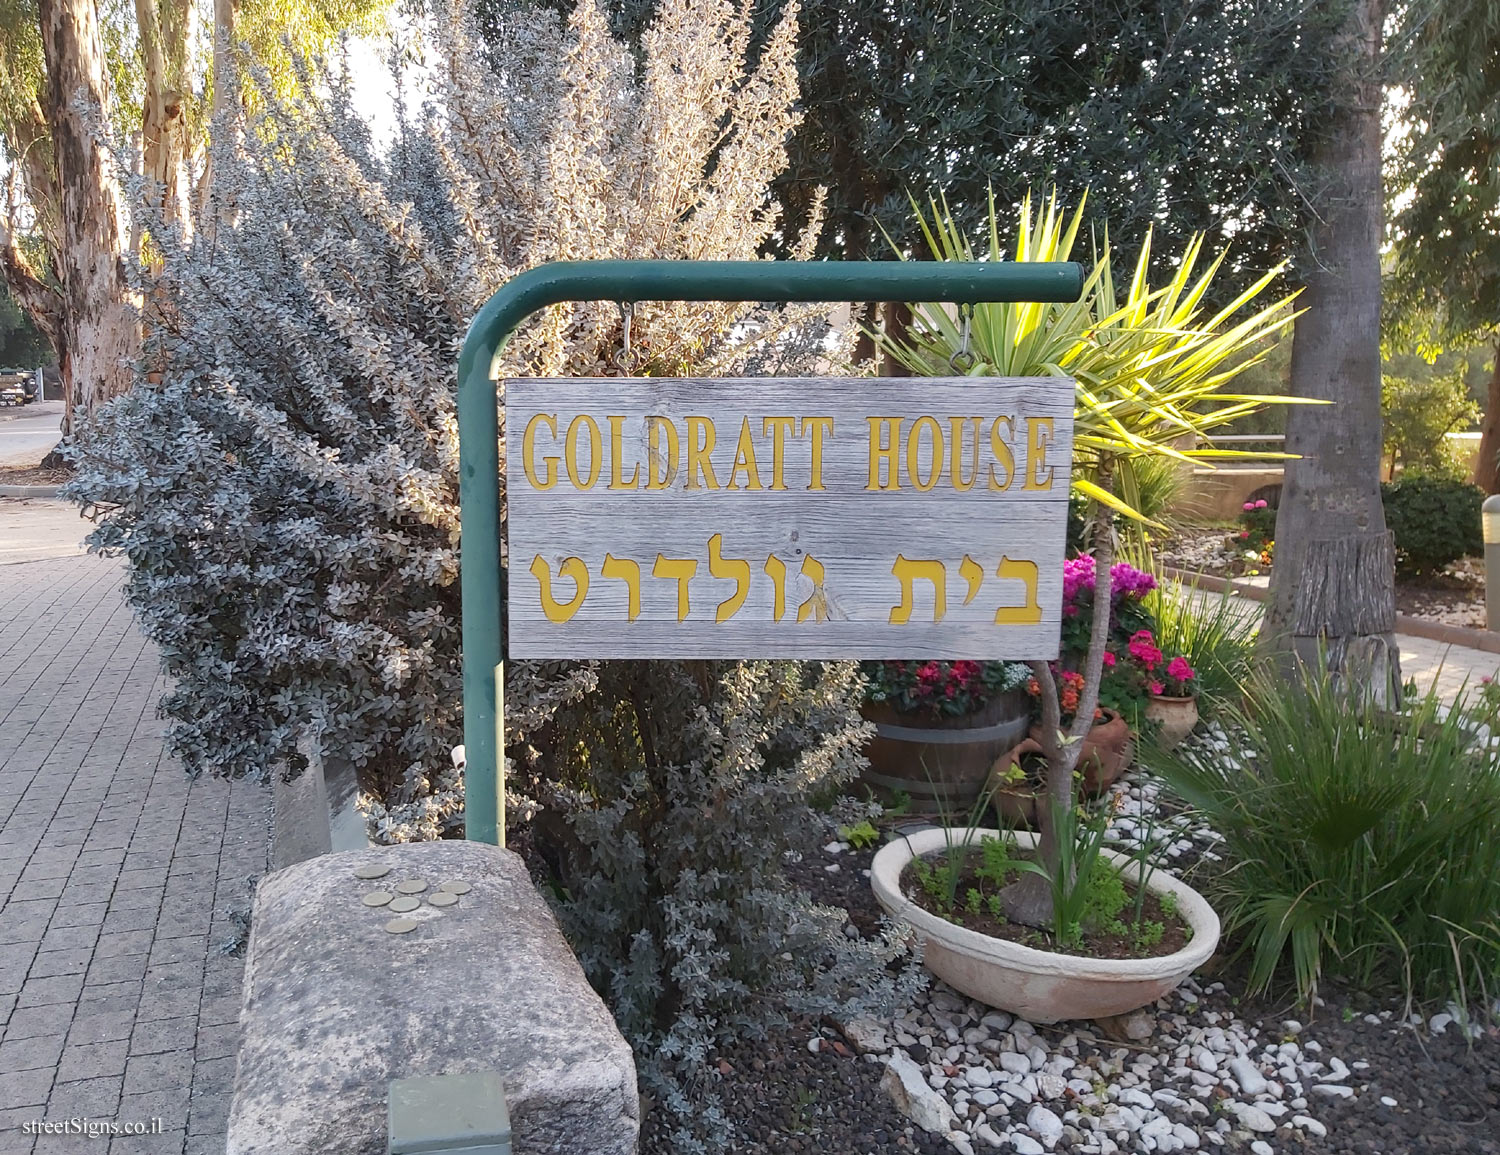 Bnei Atarot - Council House - Goldratt House